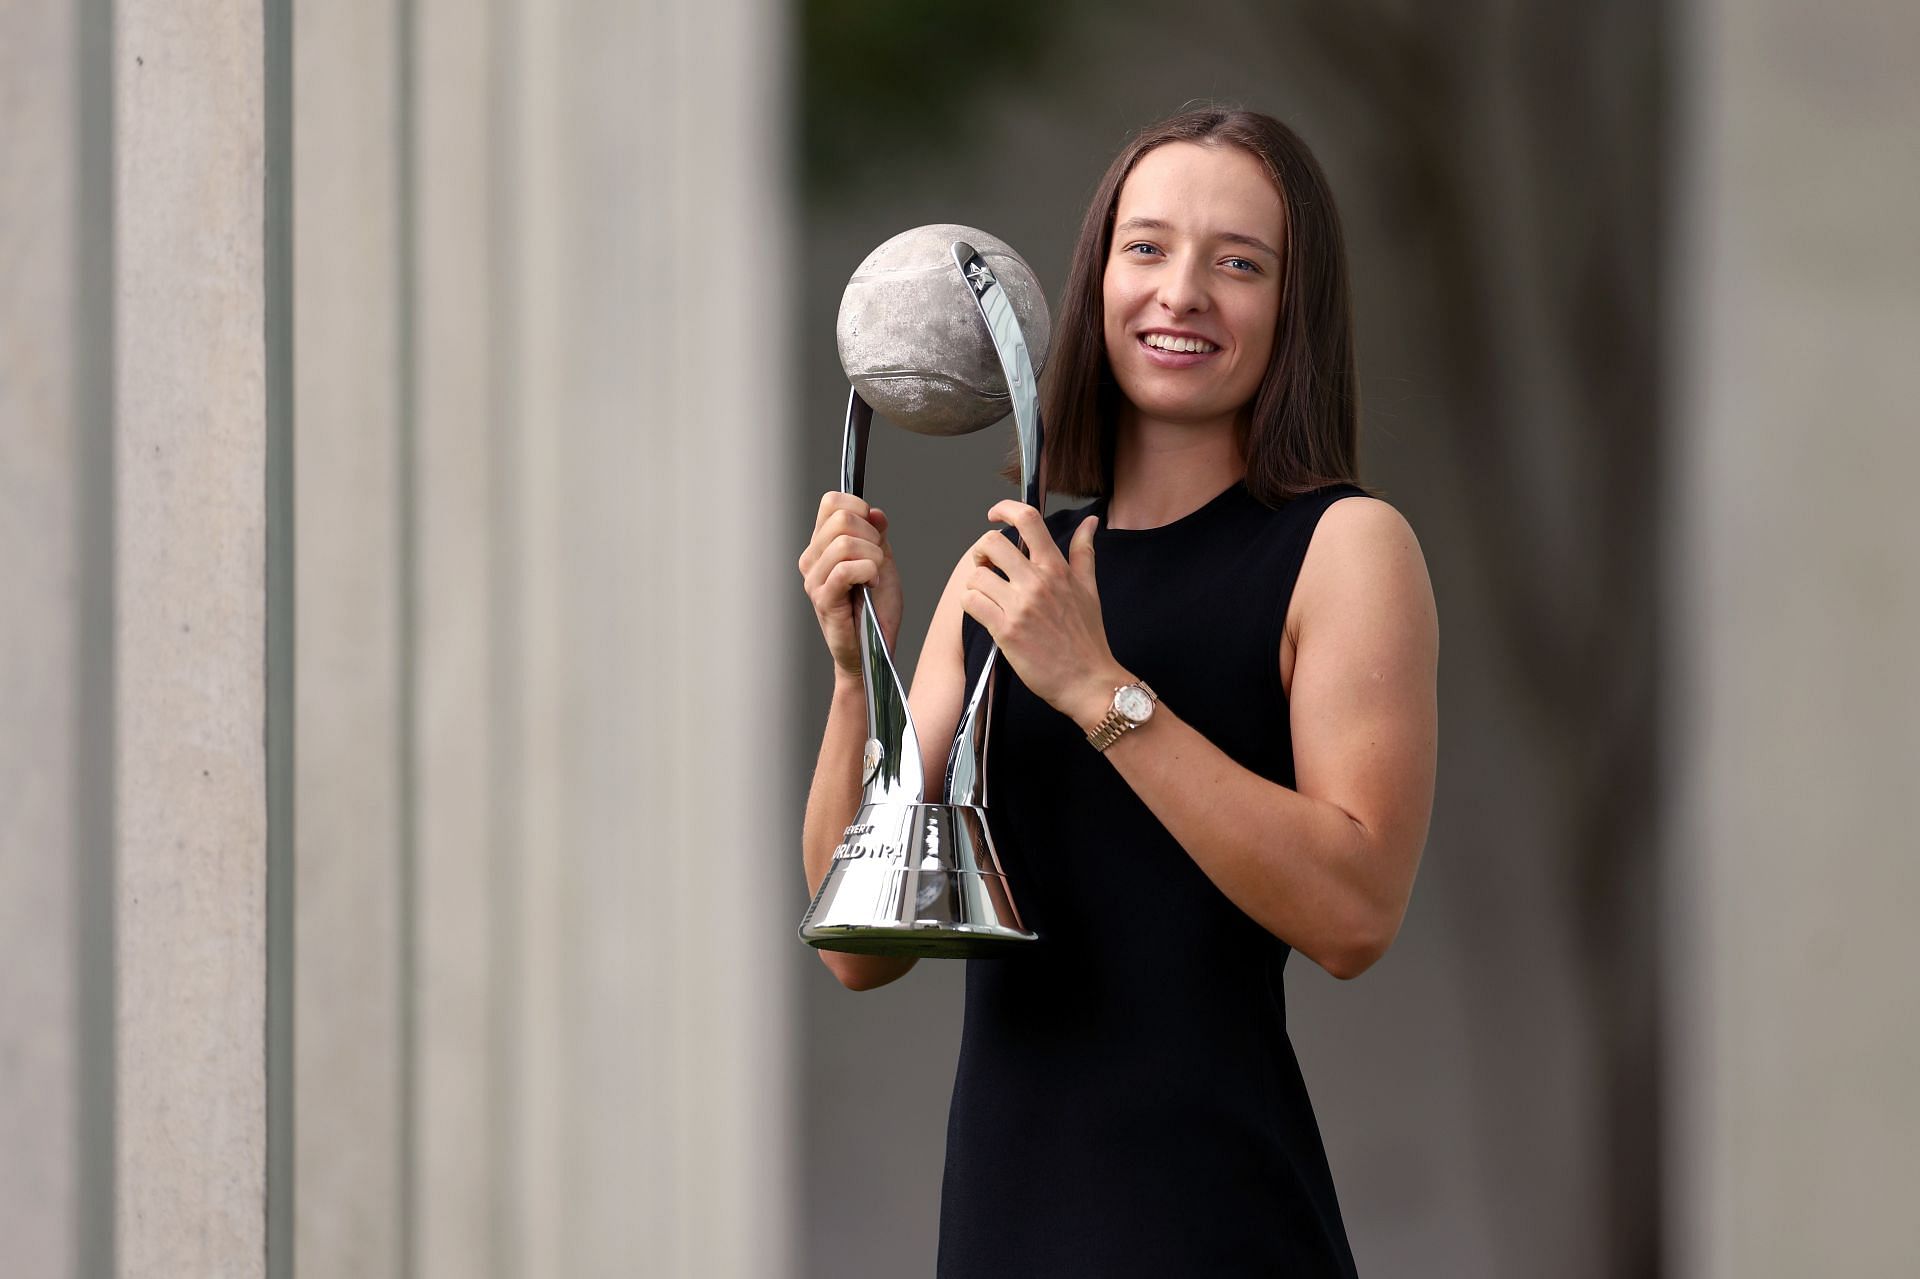 Iga Swiatek won the 2022 WTA Player of the Year award